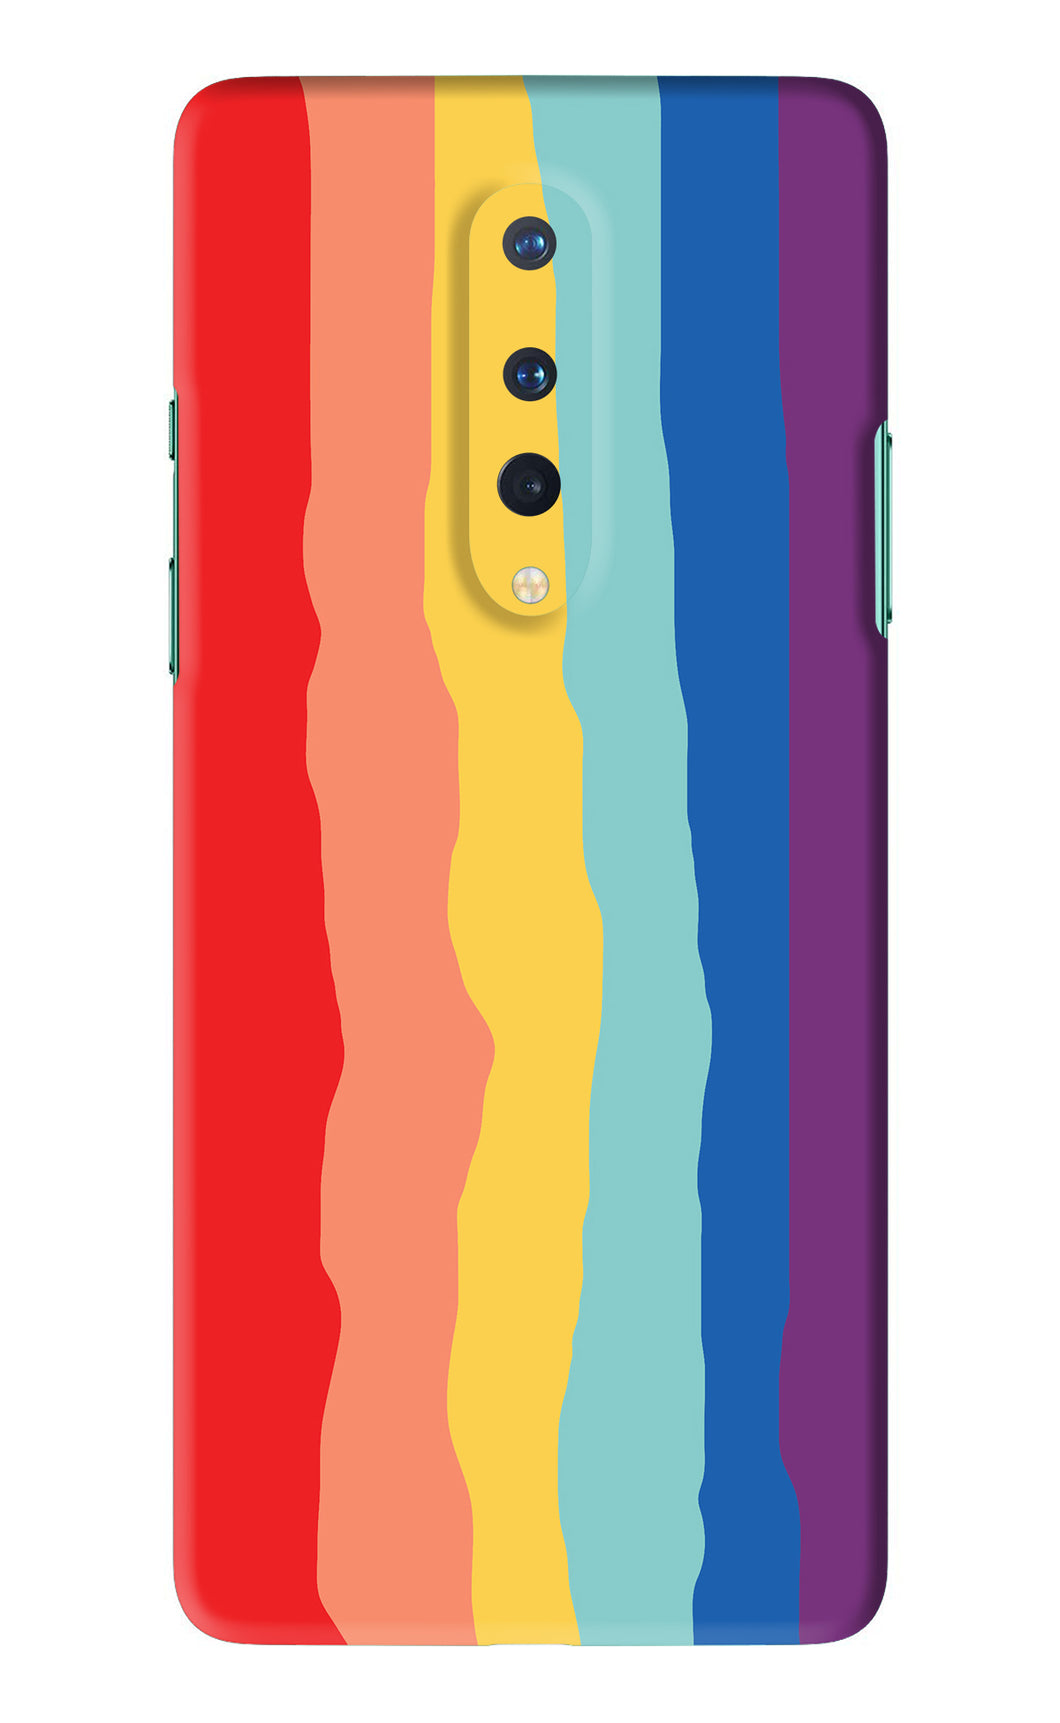 Rainbow OnePlus 8 Back Skin Wrap